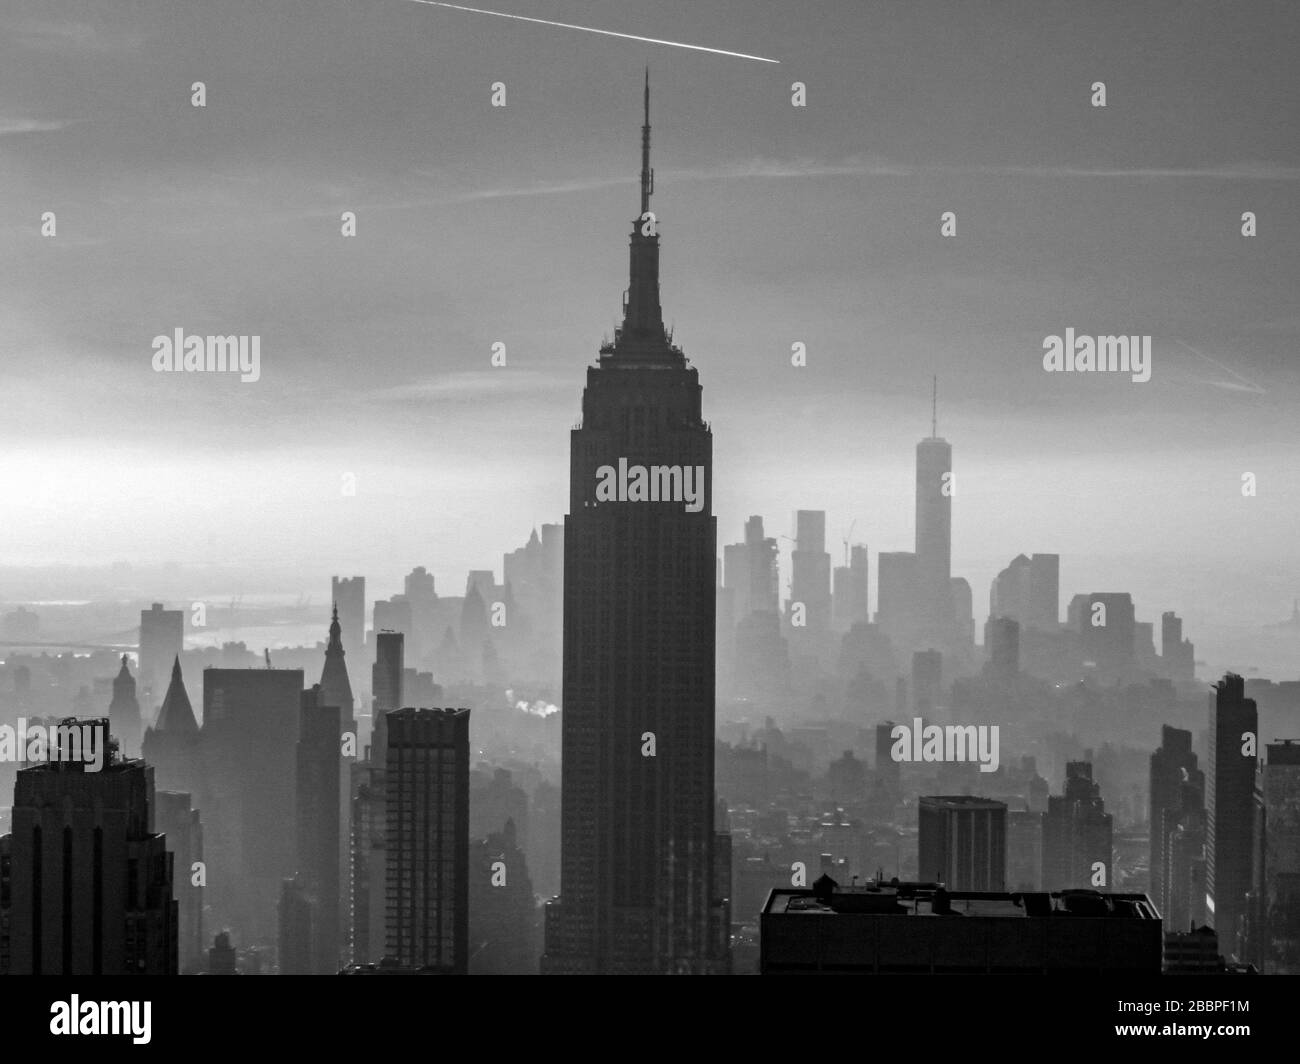 Skyline di Manhattan - una vista sgargiante del centro cittadino di Manhattan dall'Empire state Building al One World Trade Center. Foto Stock